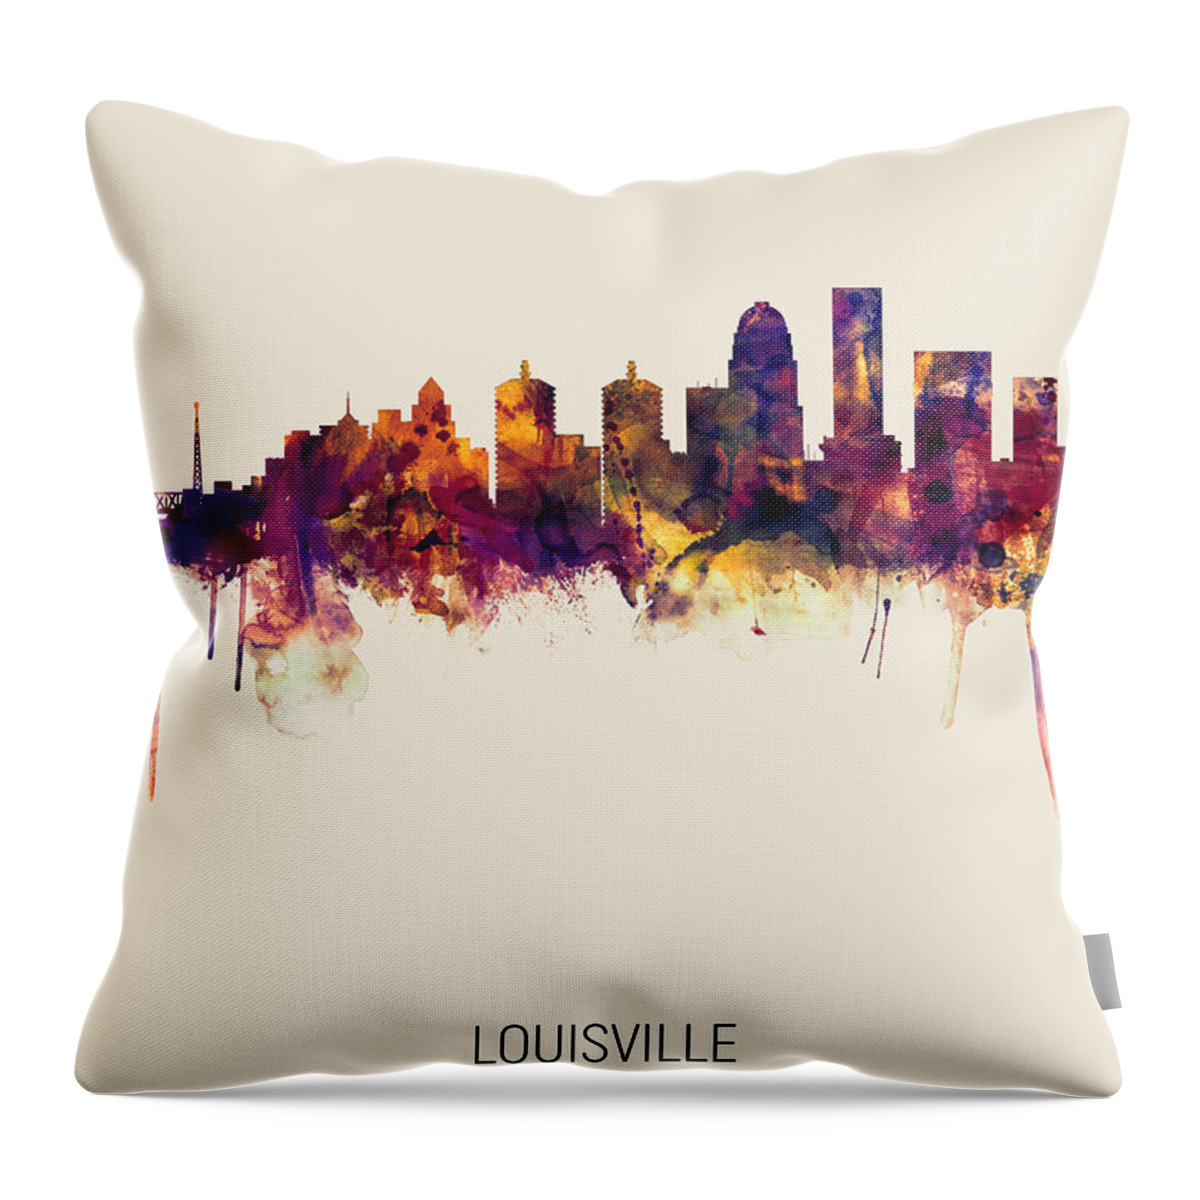 Louisville Throw Pillow featuring the digital art Louisville Kentucky City Skyline by Michael Tompsett